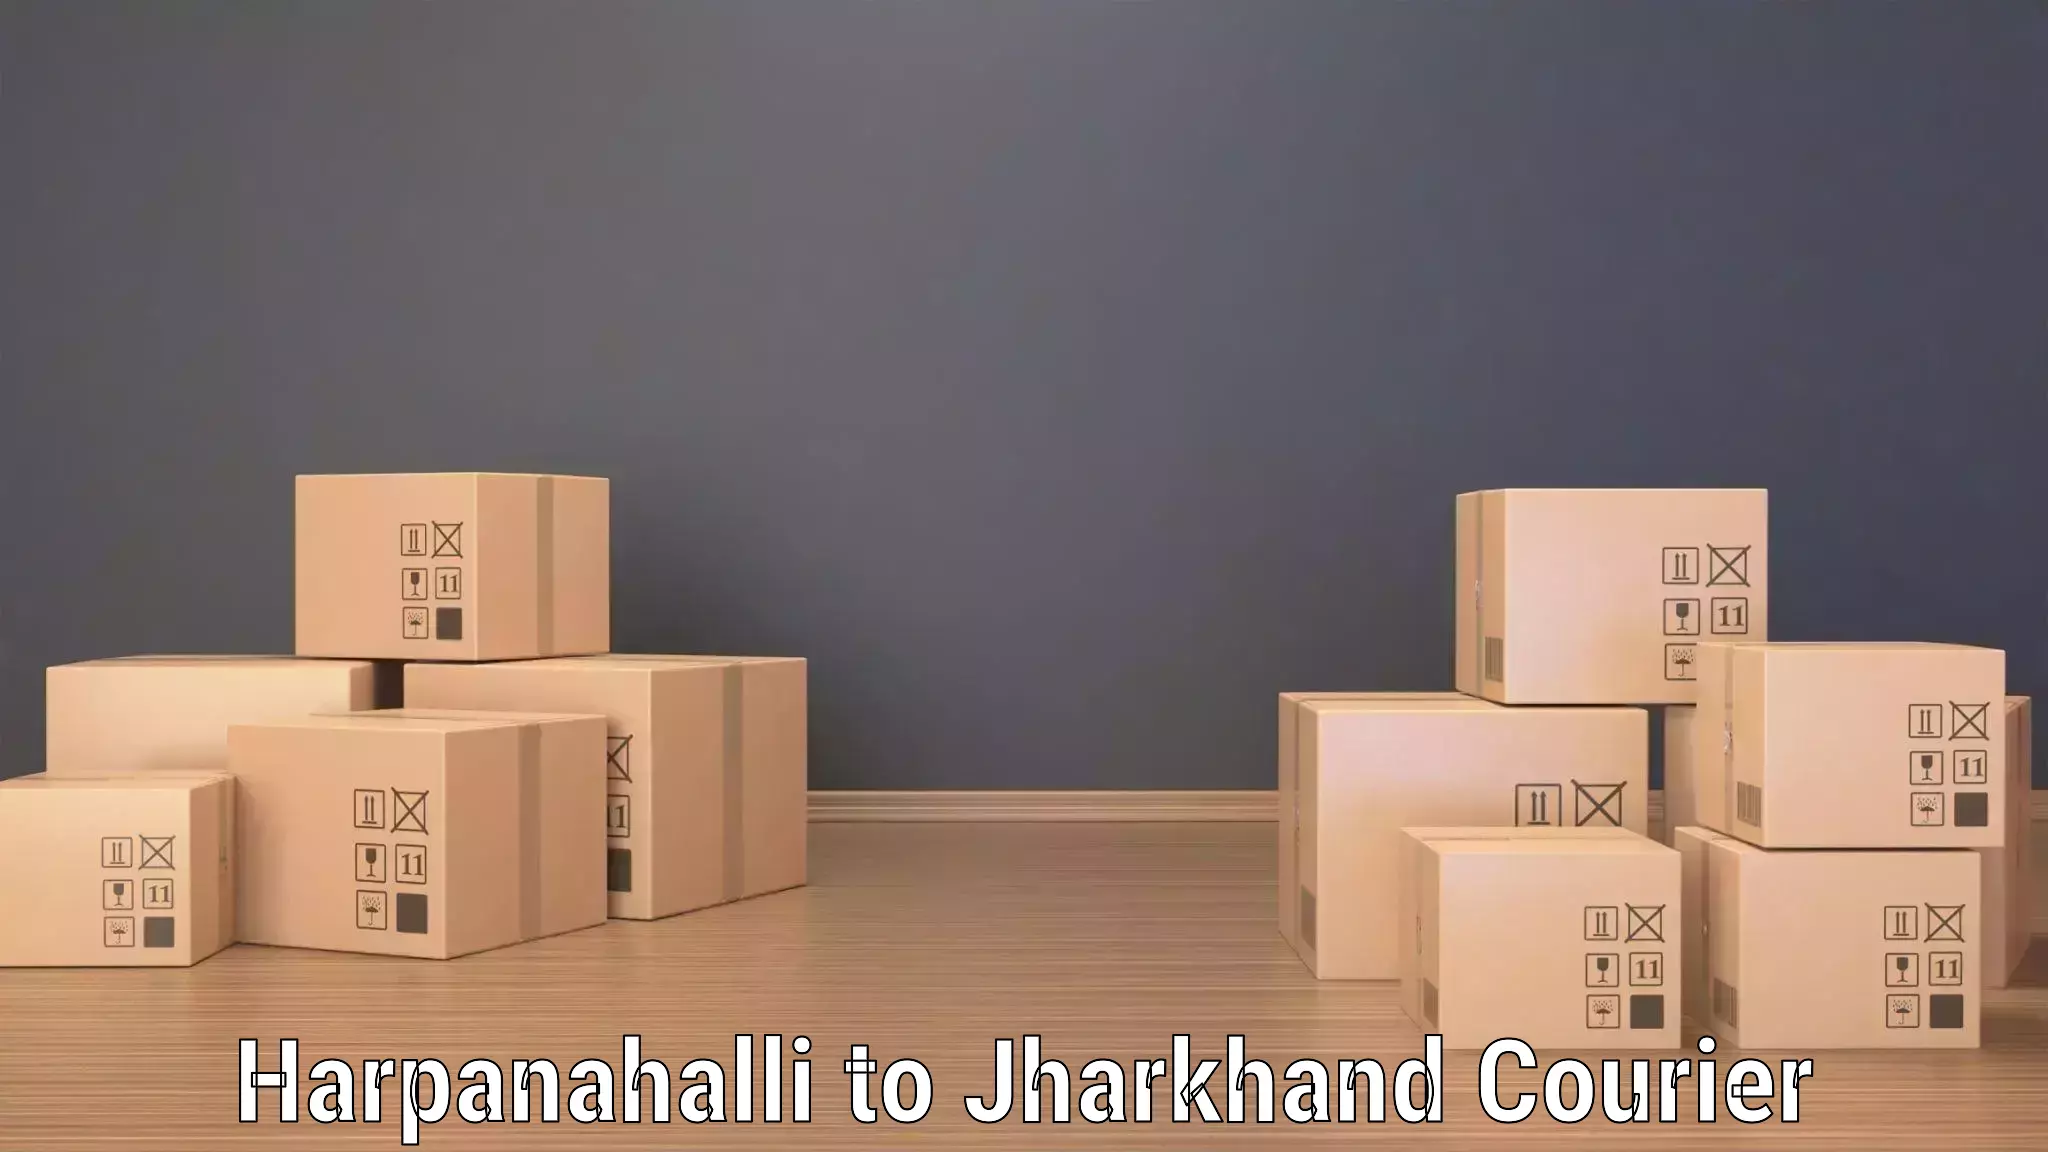 Bulk shipment Harpanahalli to Kedla